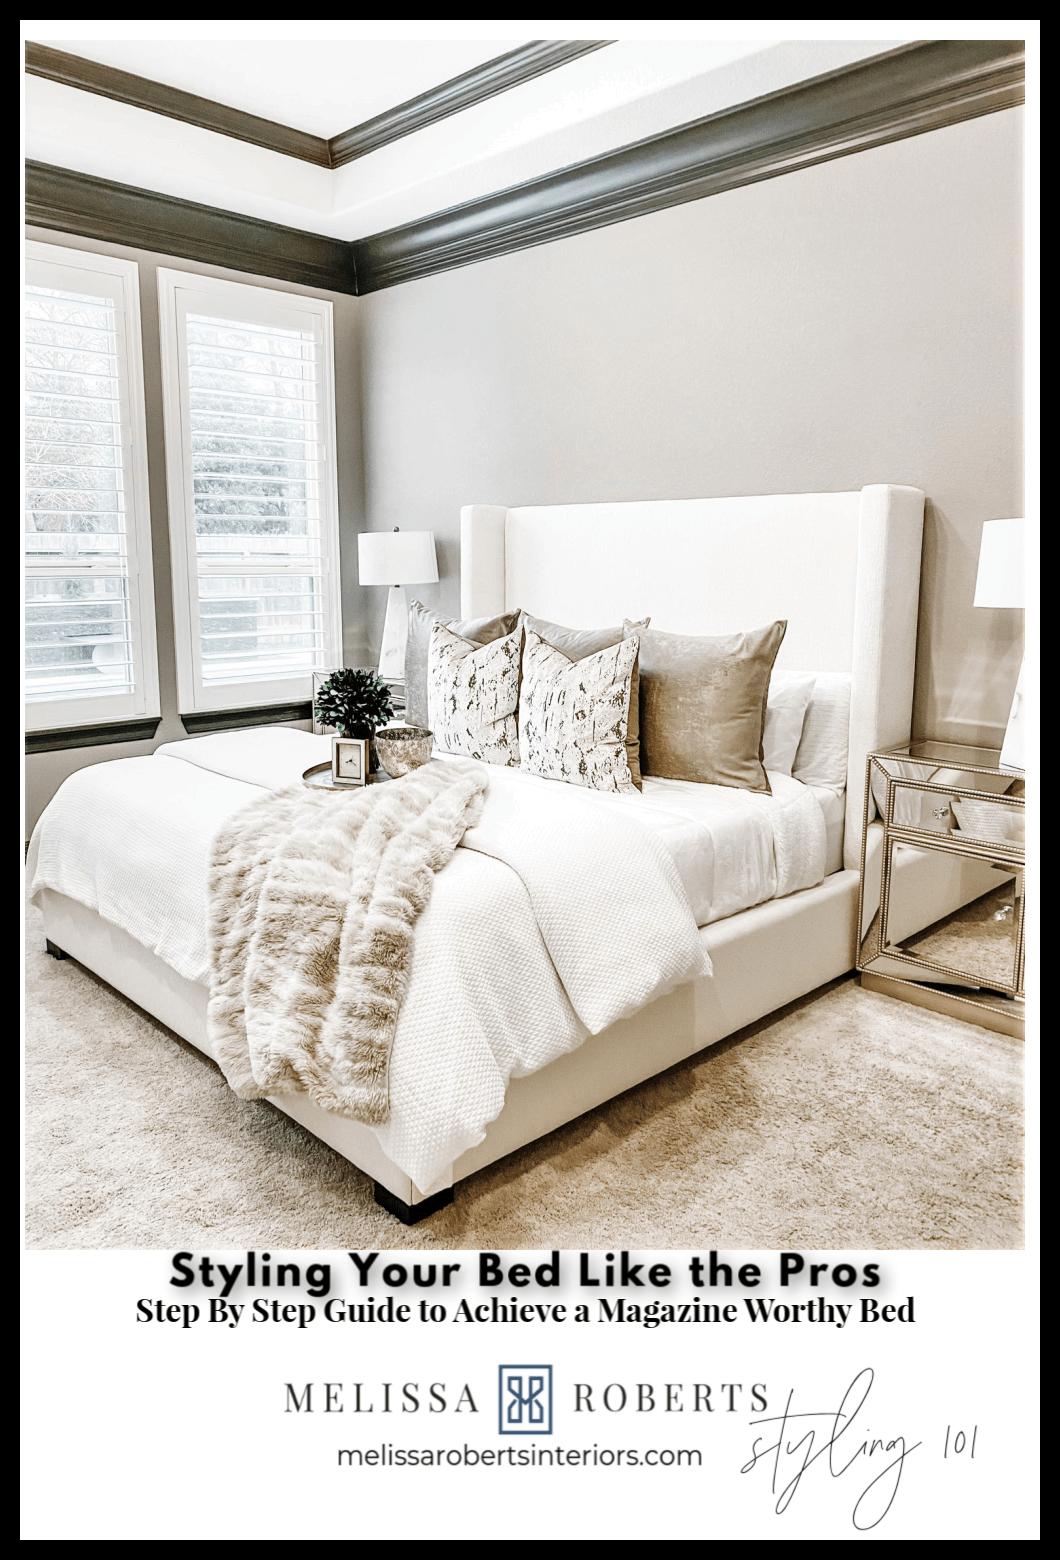 Buy Navy Louis Vuitton Bedding Sets Bed Sets, Bedroom Sets, Comforter Sets,  Duvet Cover, Bedspread